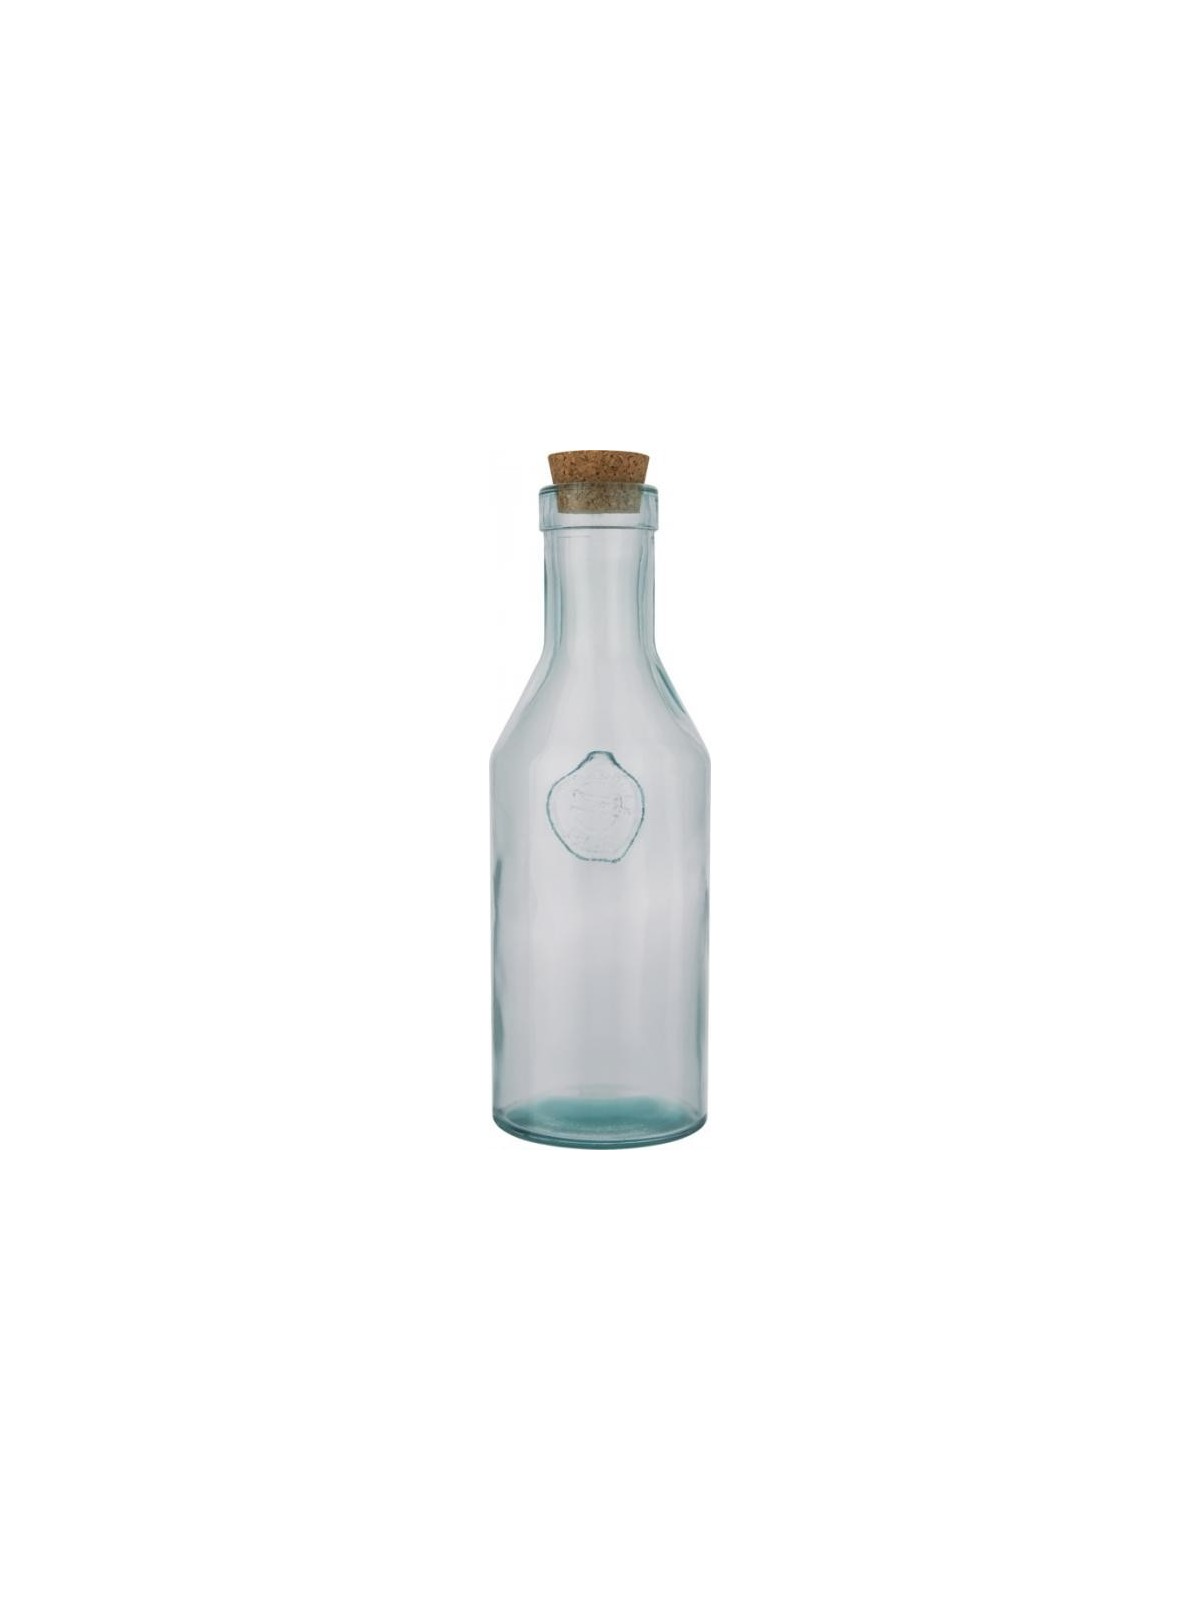 29-334 Carafe en verre recyclé personnalisé